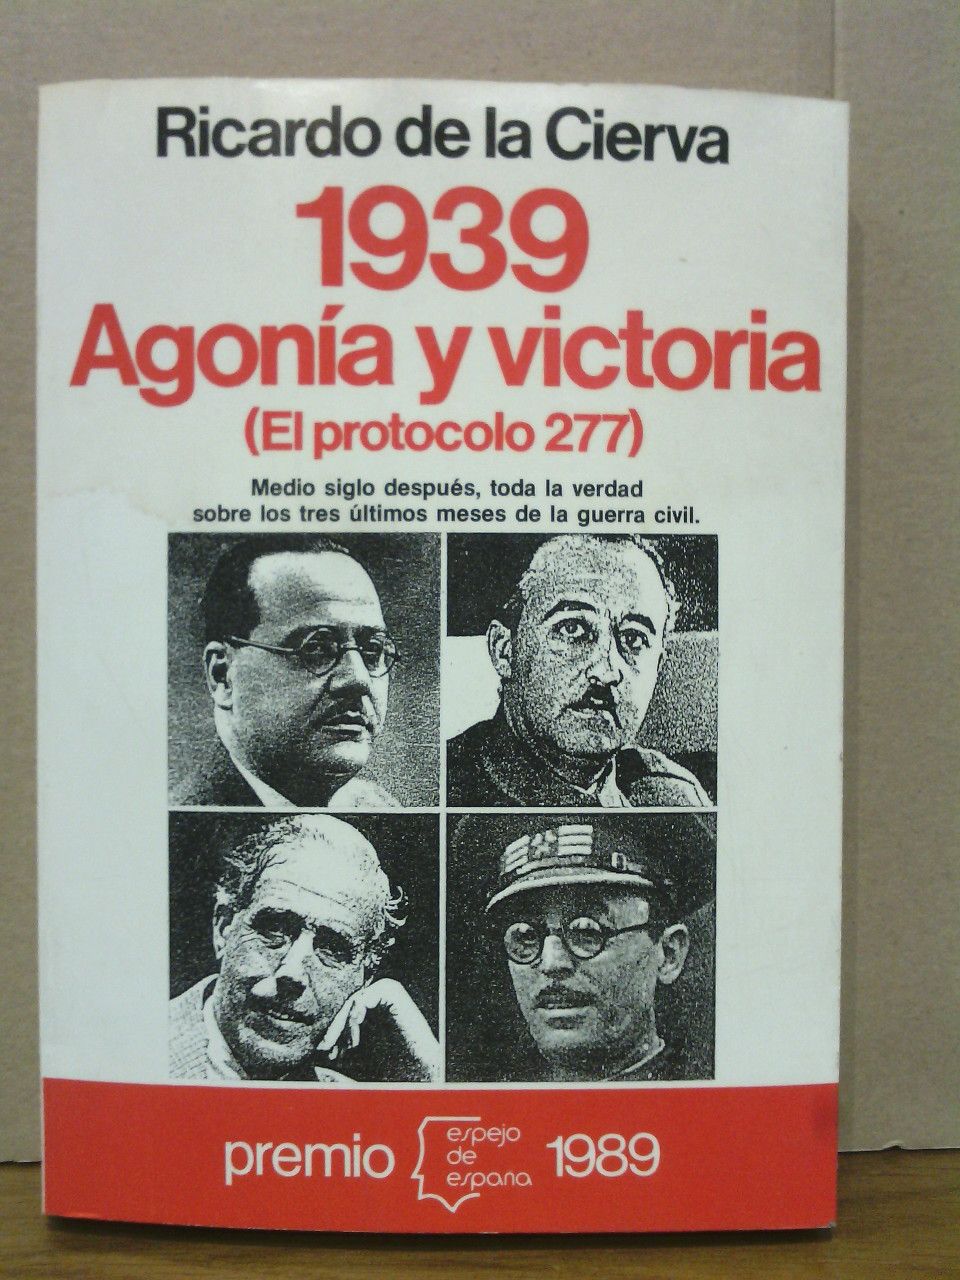 CIERVA, Ricardo de la - 1939 Agona y victoria: El protocolo 277. (Premio Espejo de Espaa 1989)